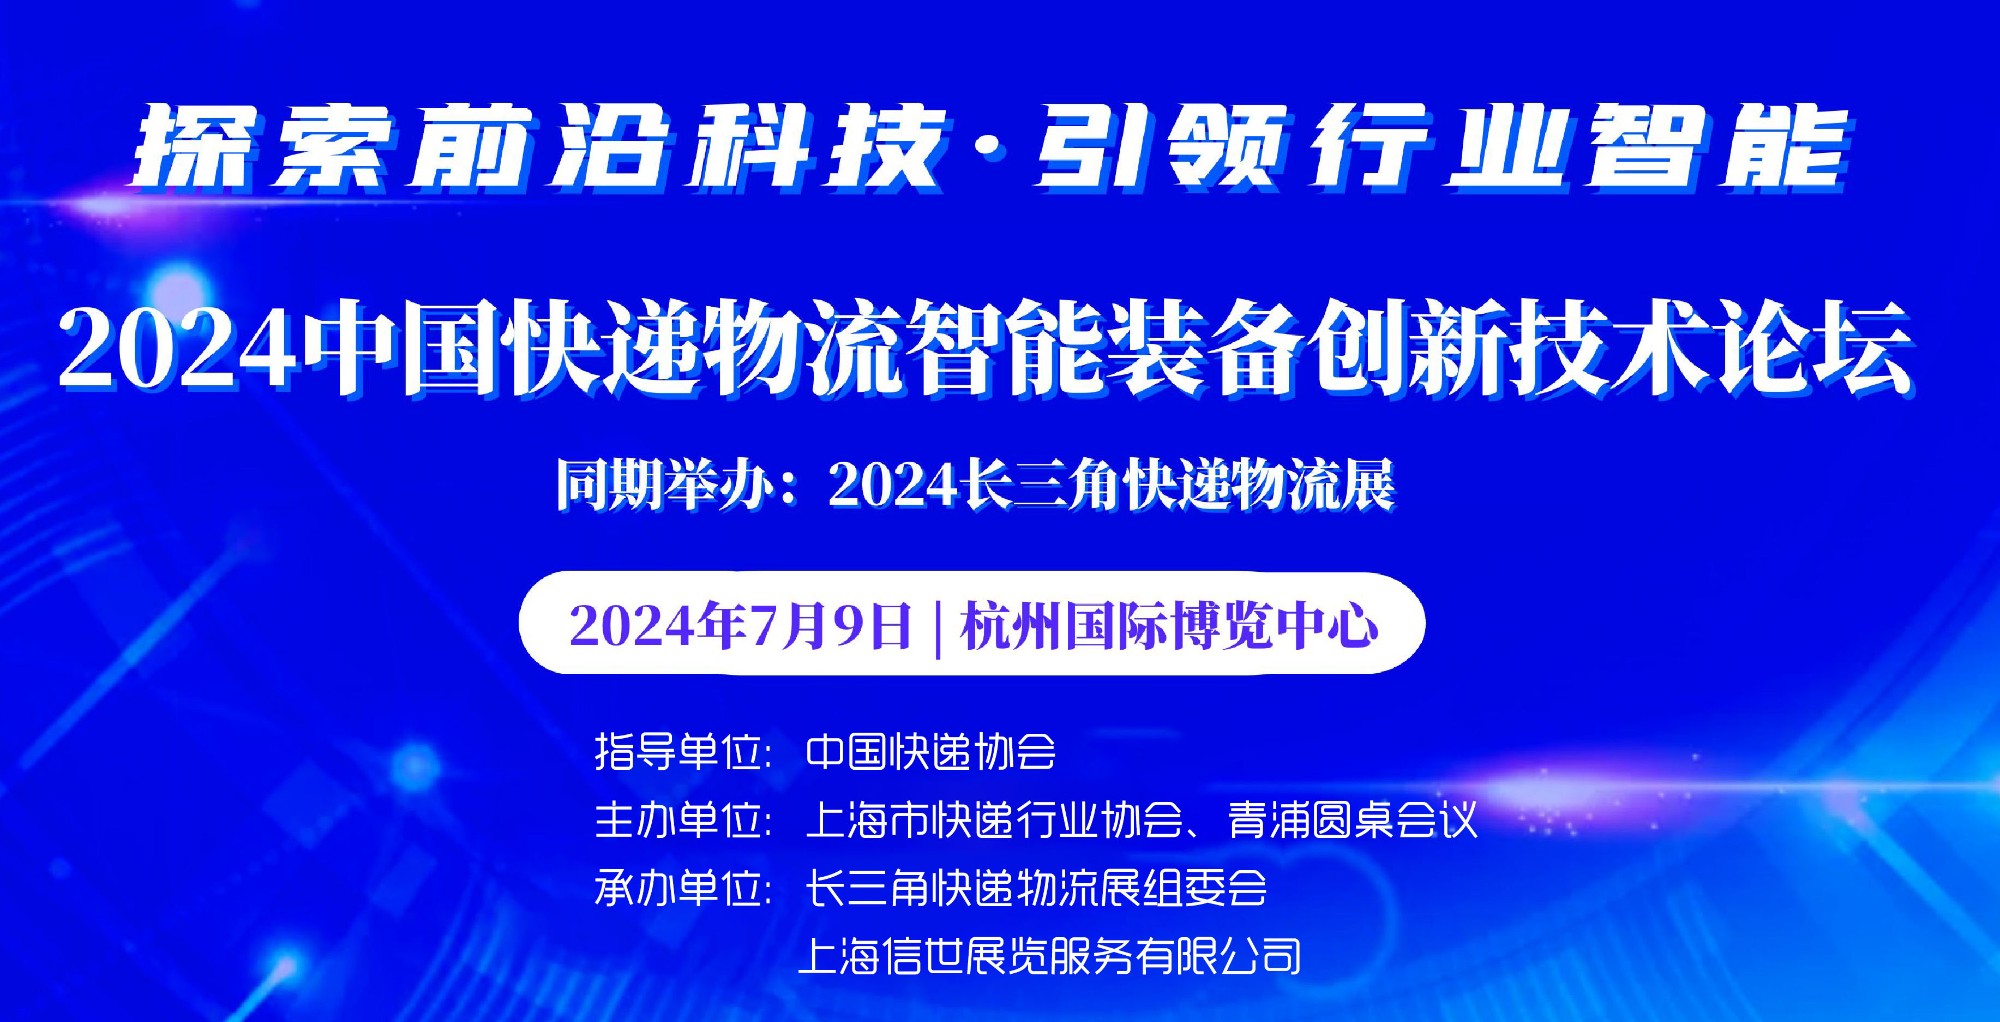 2024中国快递物流智能装备创新技术论坛